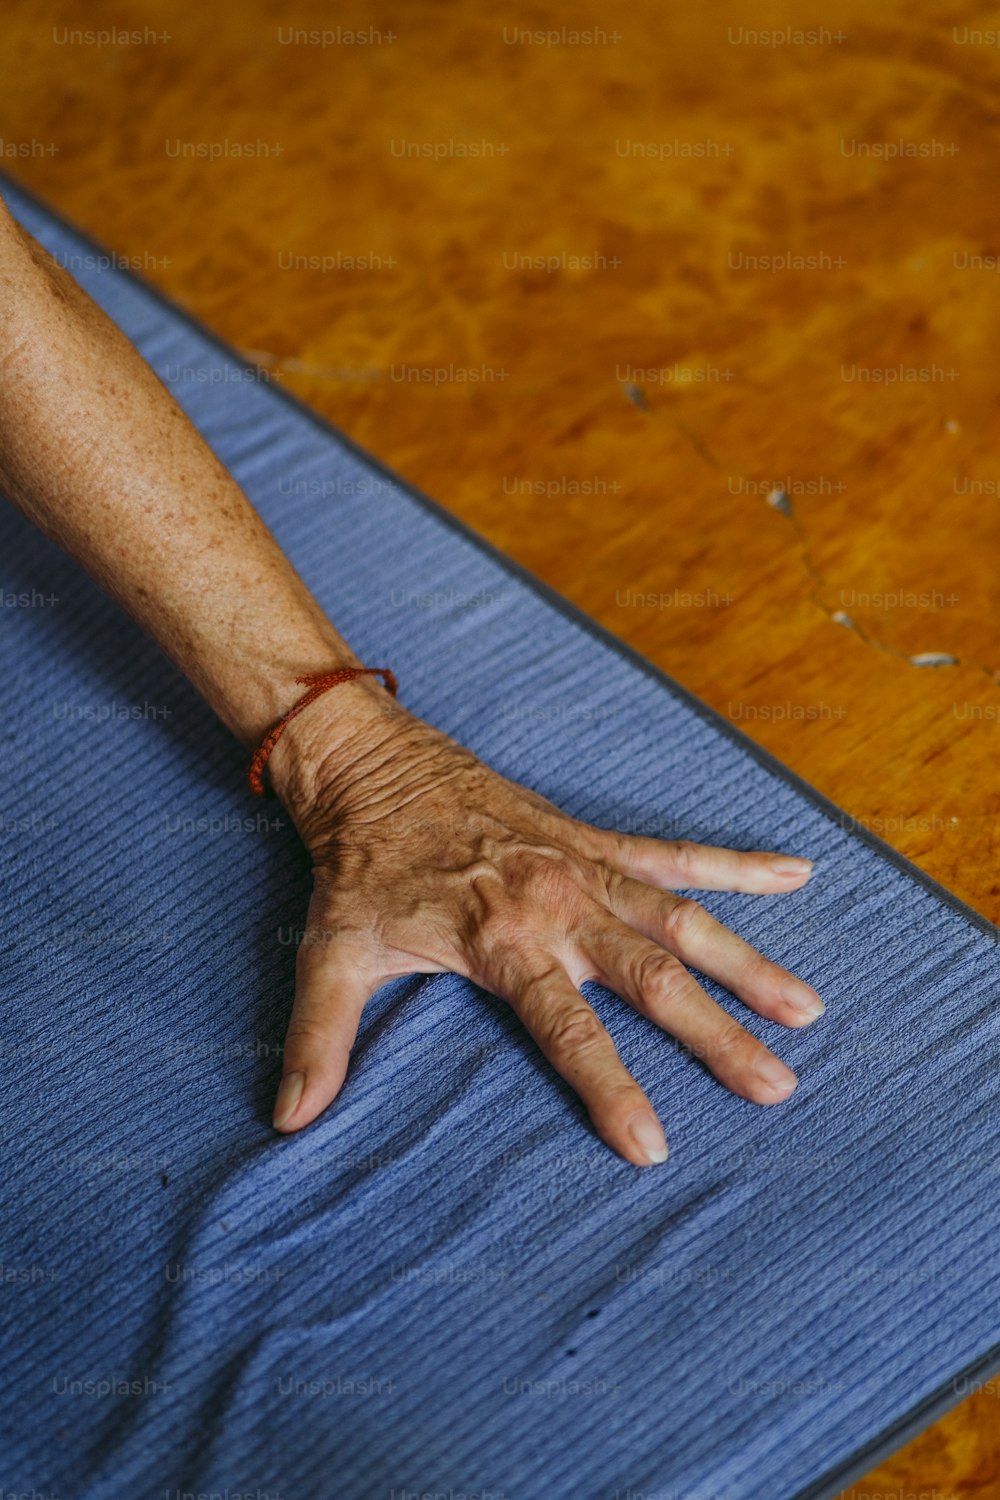 la main d’une personne posée sur un tapis bleu